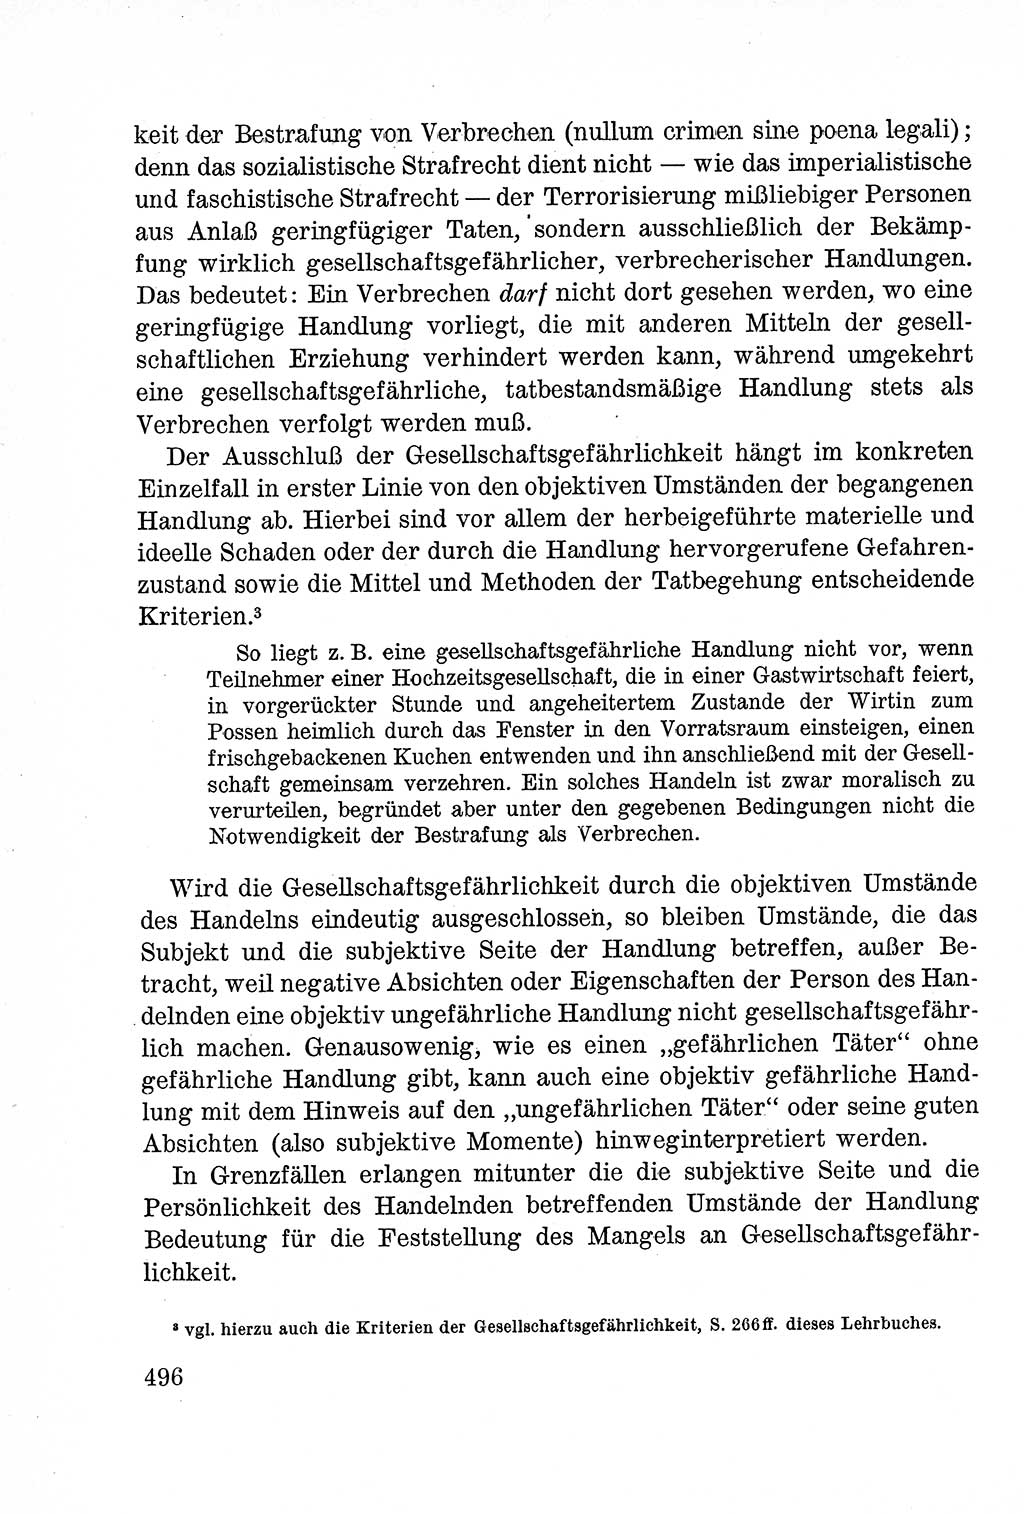 Lehrbuch des Strafrechts der Deutschen Demokratischen Republik (DDR), Allgemeiner Teil 1957, Seite 496 (Lb. Strafr. DDR AT 1957, S. 496)